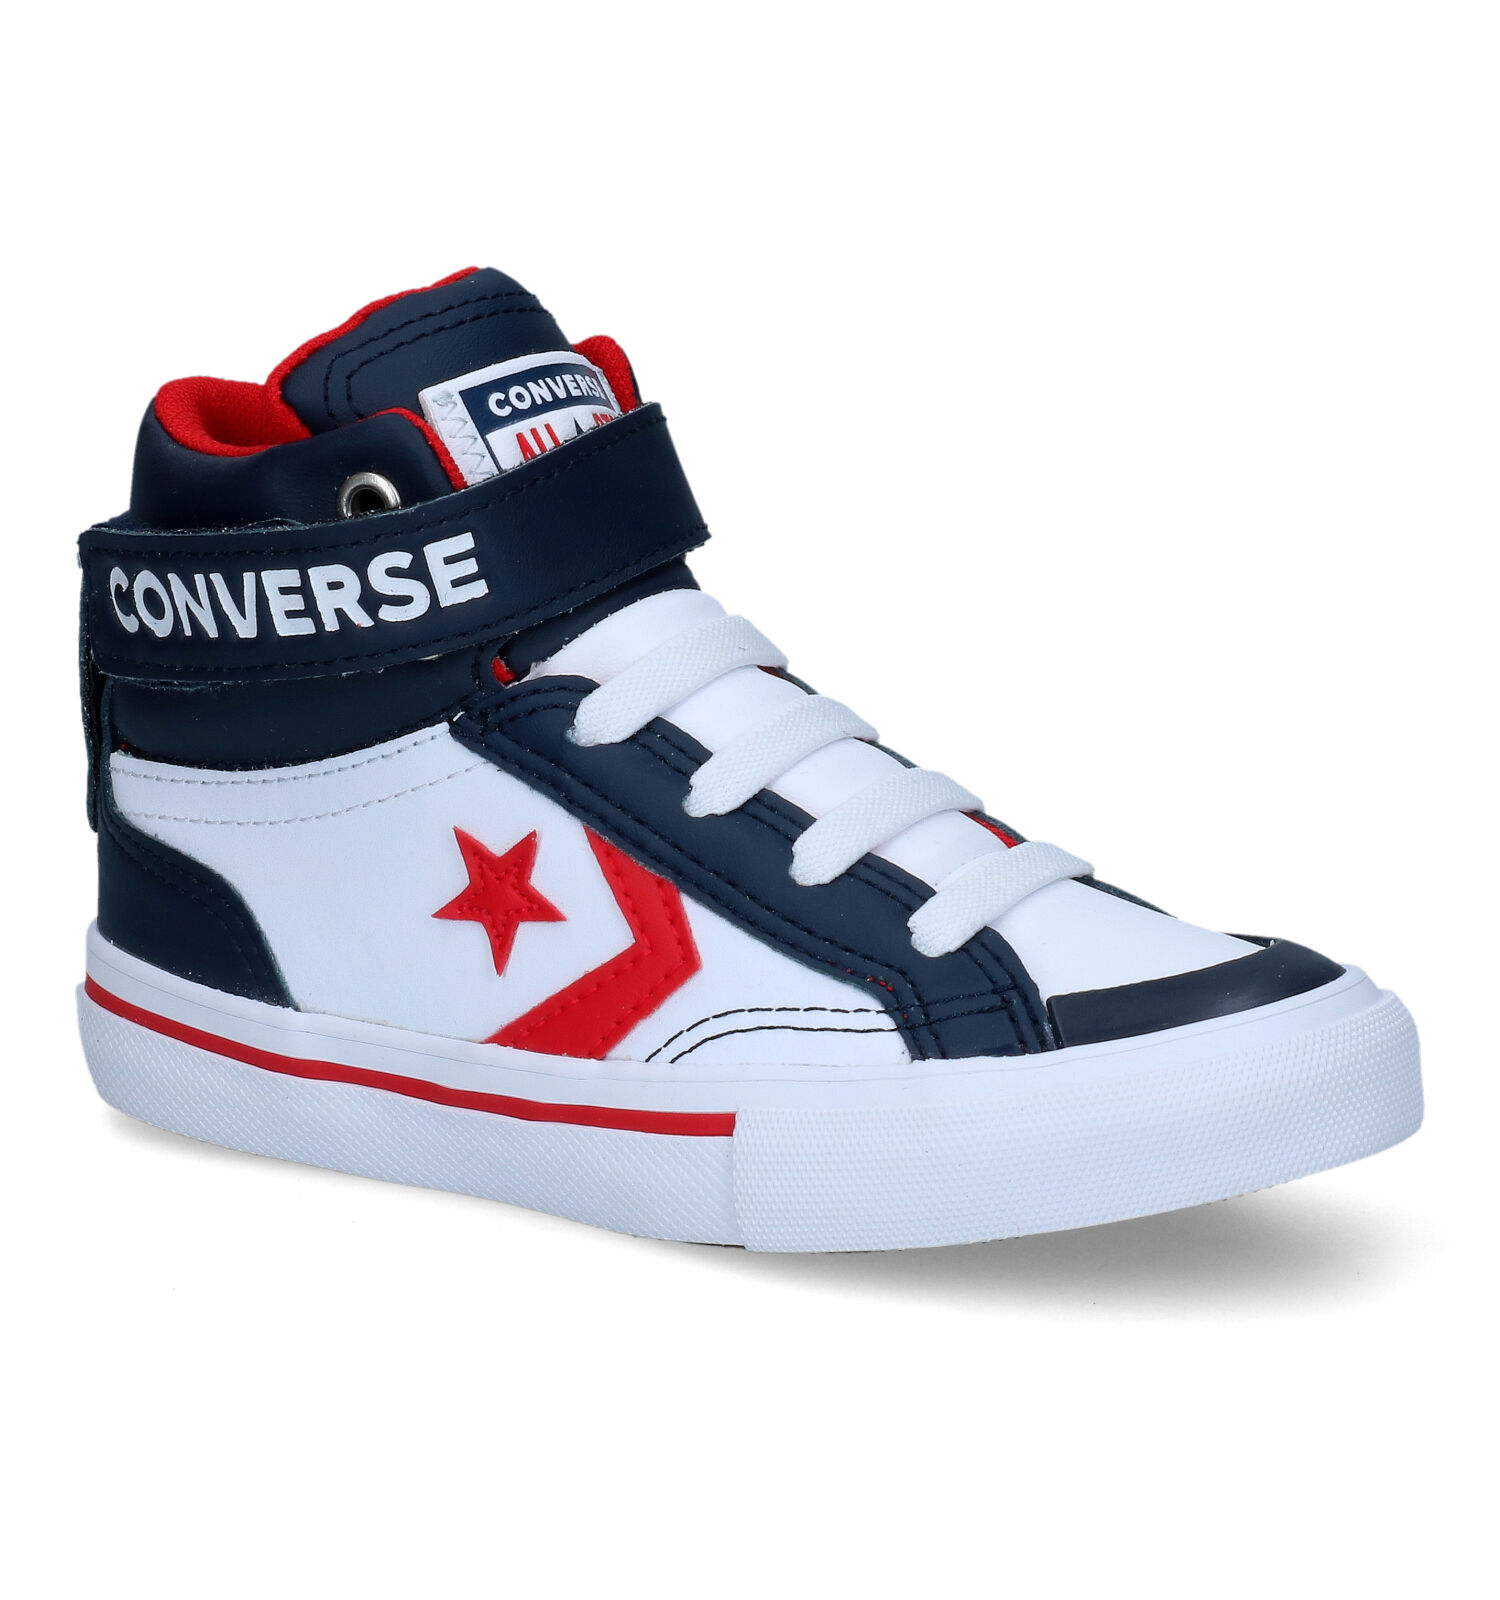 rechtdoor Hond Miljard Converse Pro Blaze Strap HI Witte Sneakers Kinderschoenen | TORFS.BE